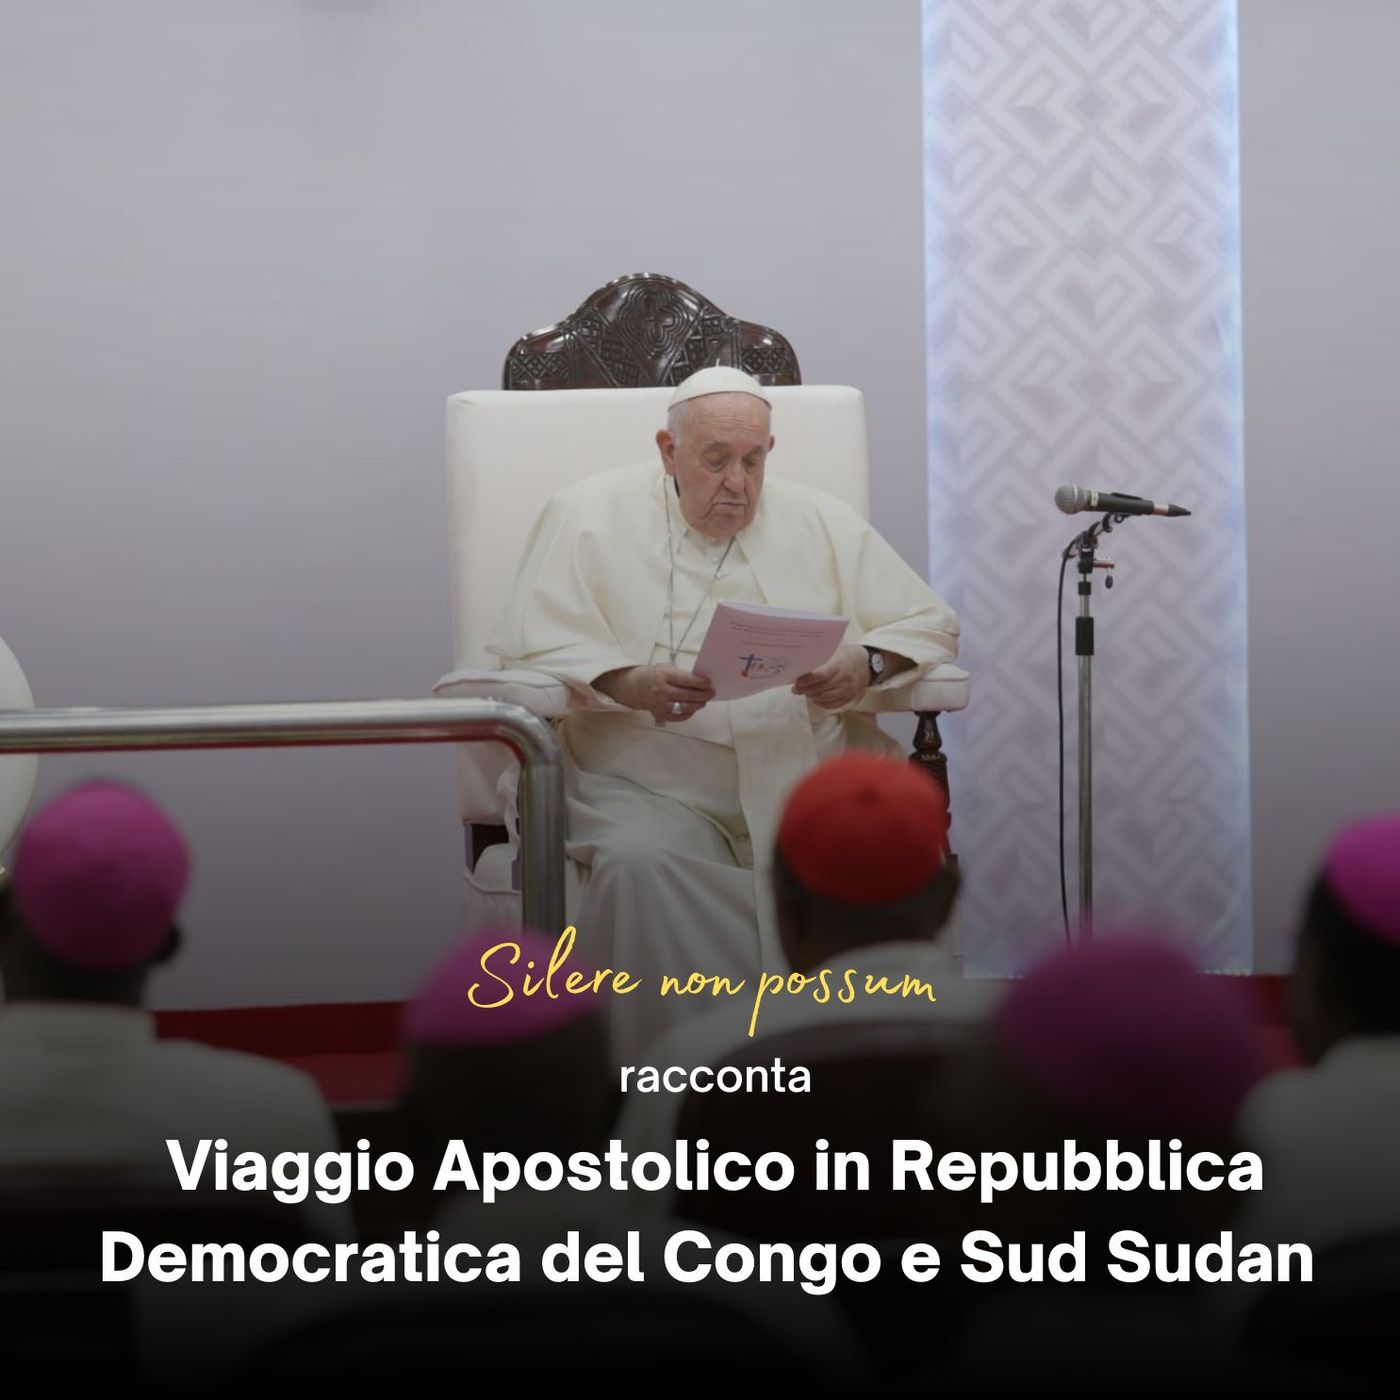 - Day 4 - Viaggio Apostolico in Repubblica Democratica del Congo e Sud Sudan